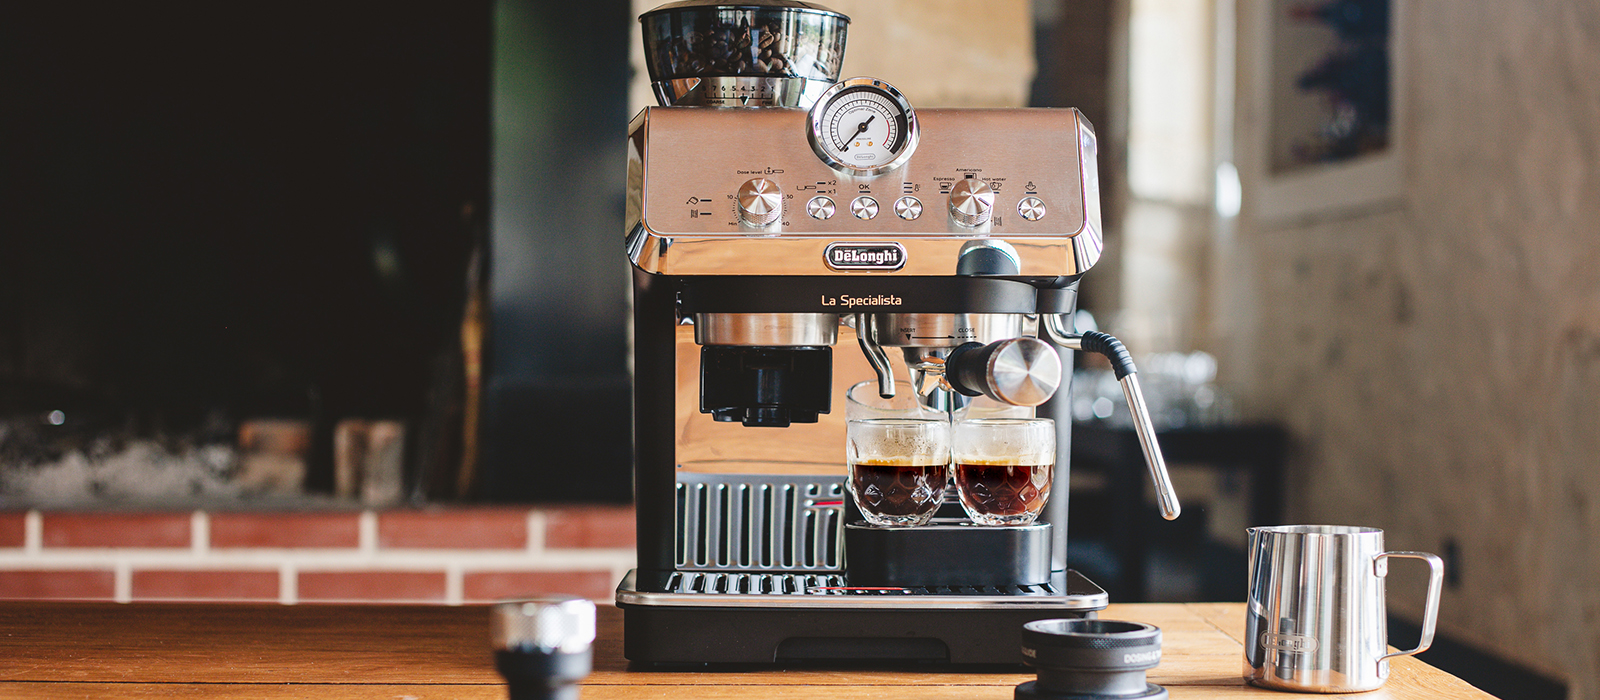 La pression en bars d'une machine à café : explications – Blog BUT